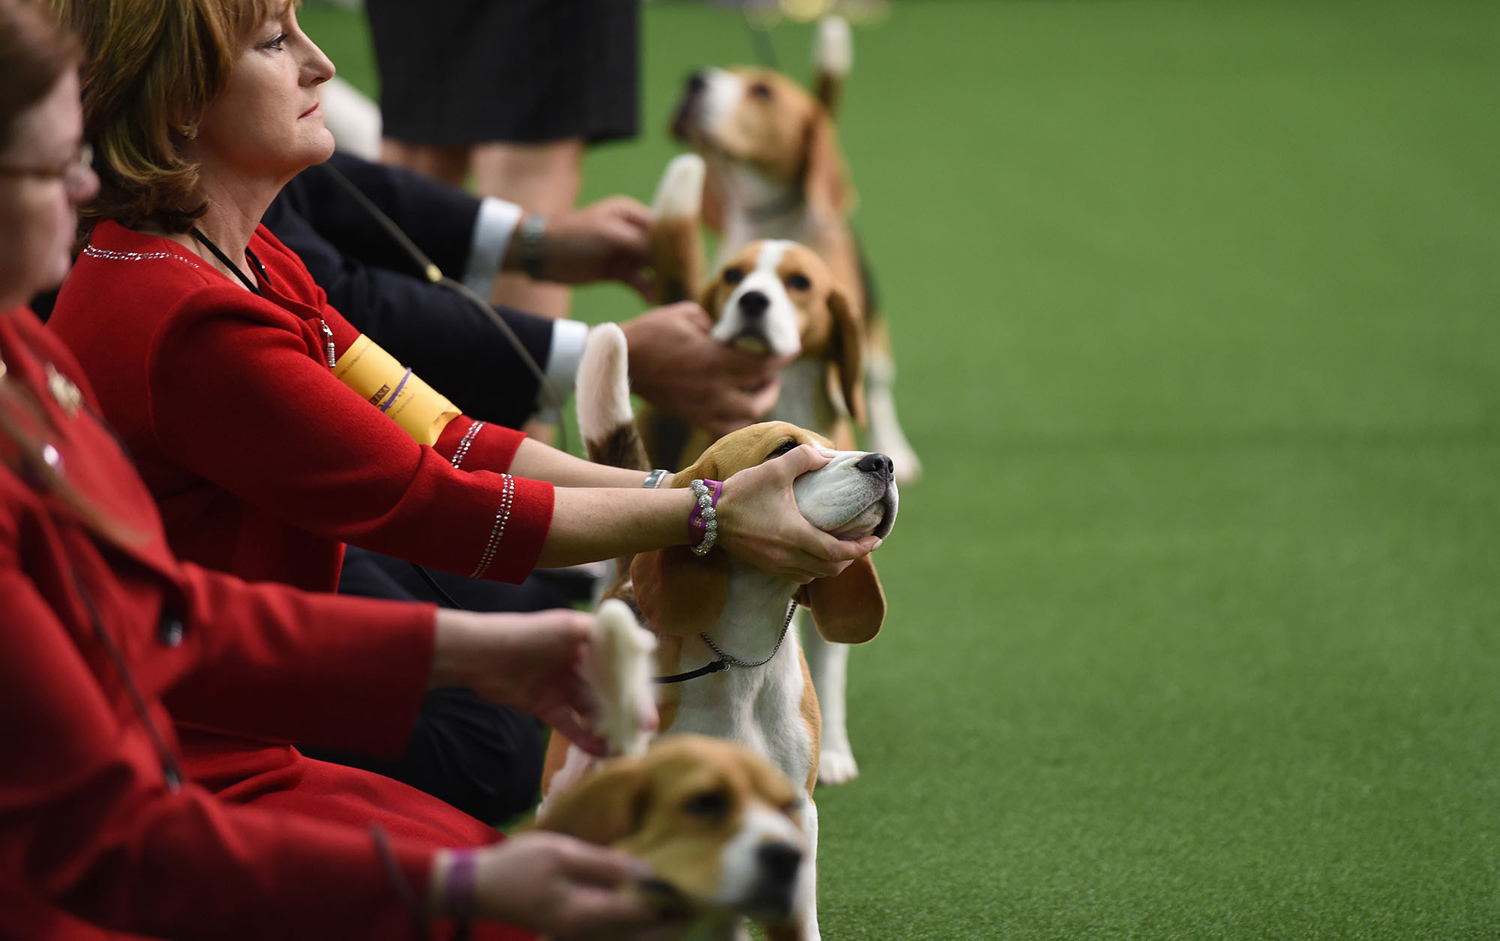 12. Những con Beagle xếp hàng trong khu vực giám khảo này thứ nhất của cuộc tranh tài 13.2.